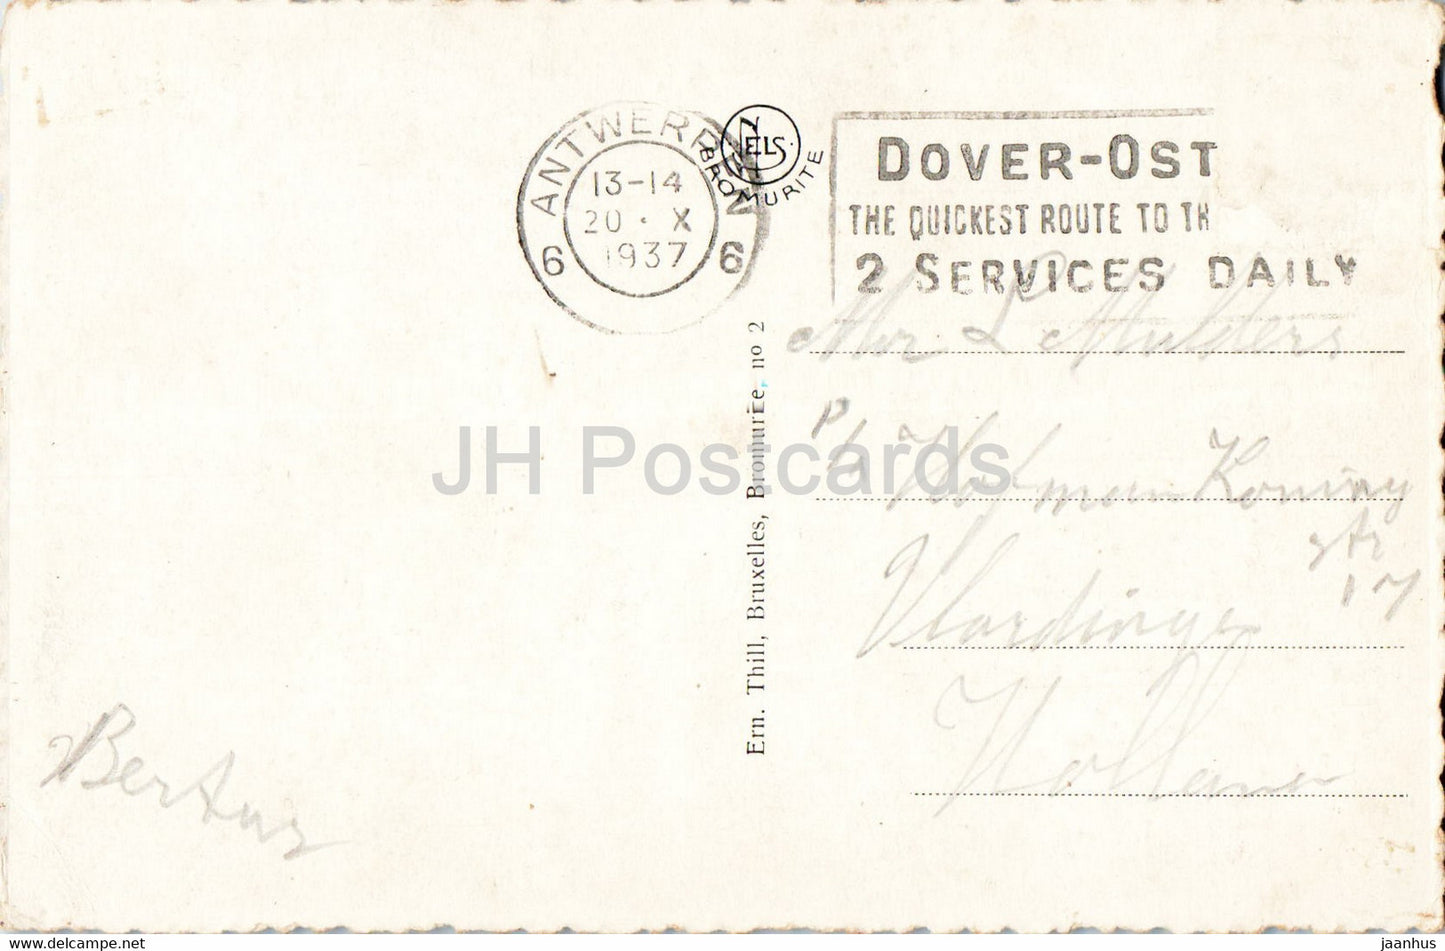 Anvers - Antwerpen - La Cathedrale - De Hoofdkerk - cathedral - old postcard - 1937 - Belgium - used